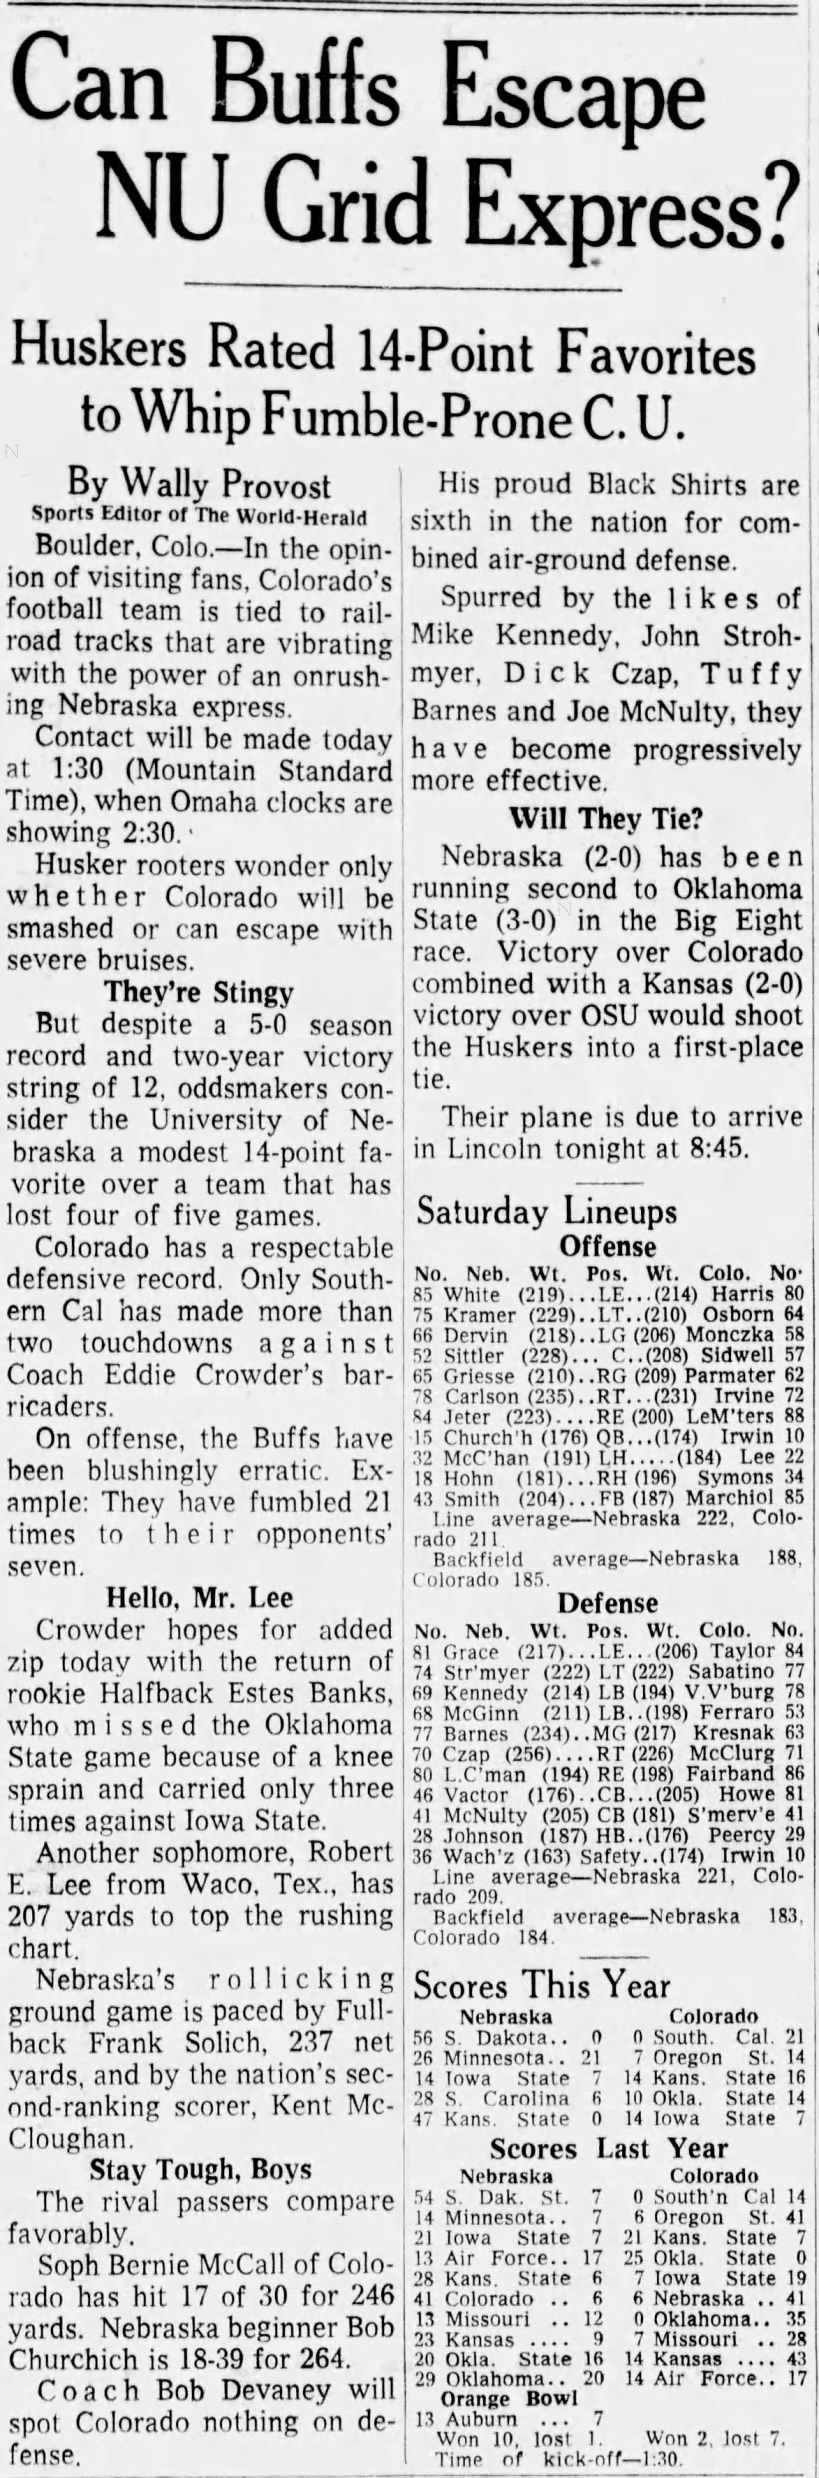 1964 Nebraska-Colorado football preview and lineups